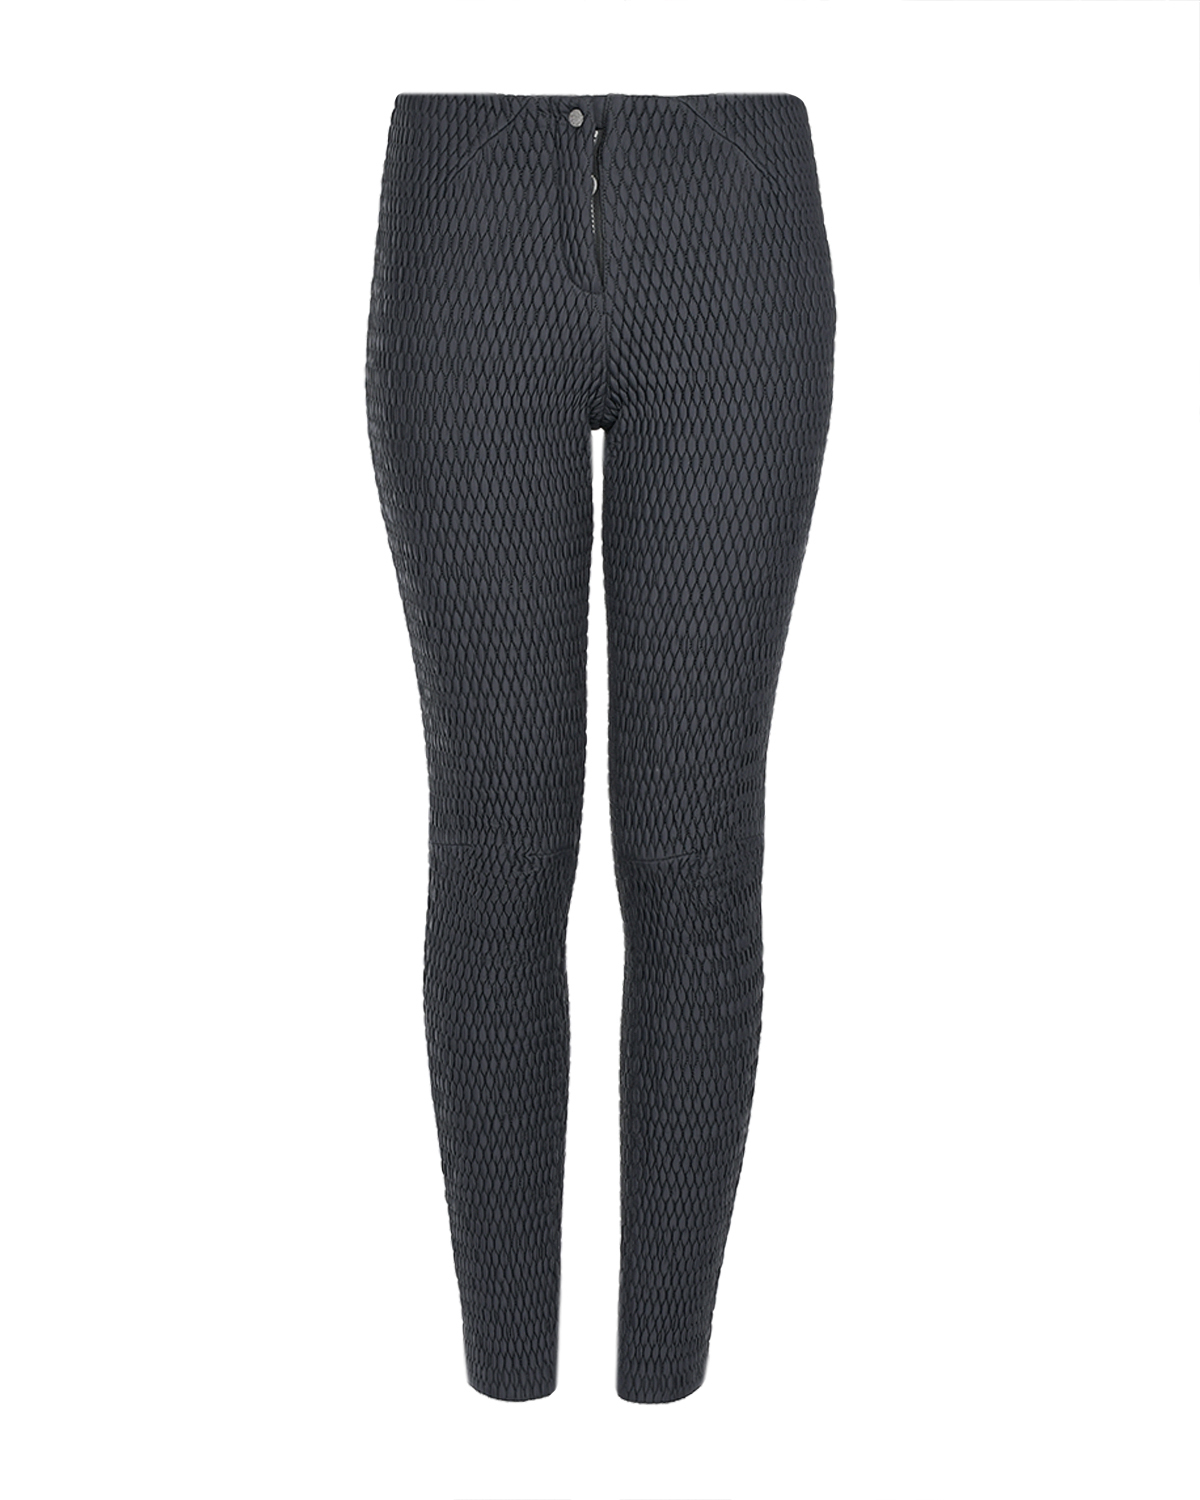 Черные стеганые брюки Naumi, размер 40, цвет черный - фото 1